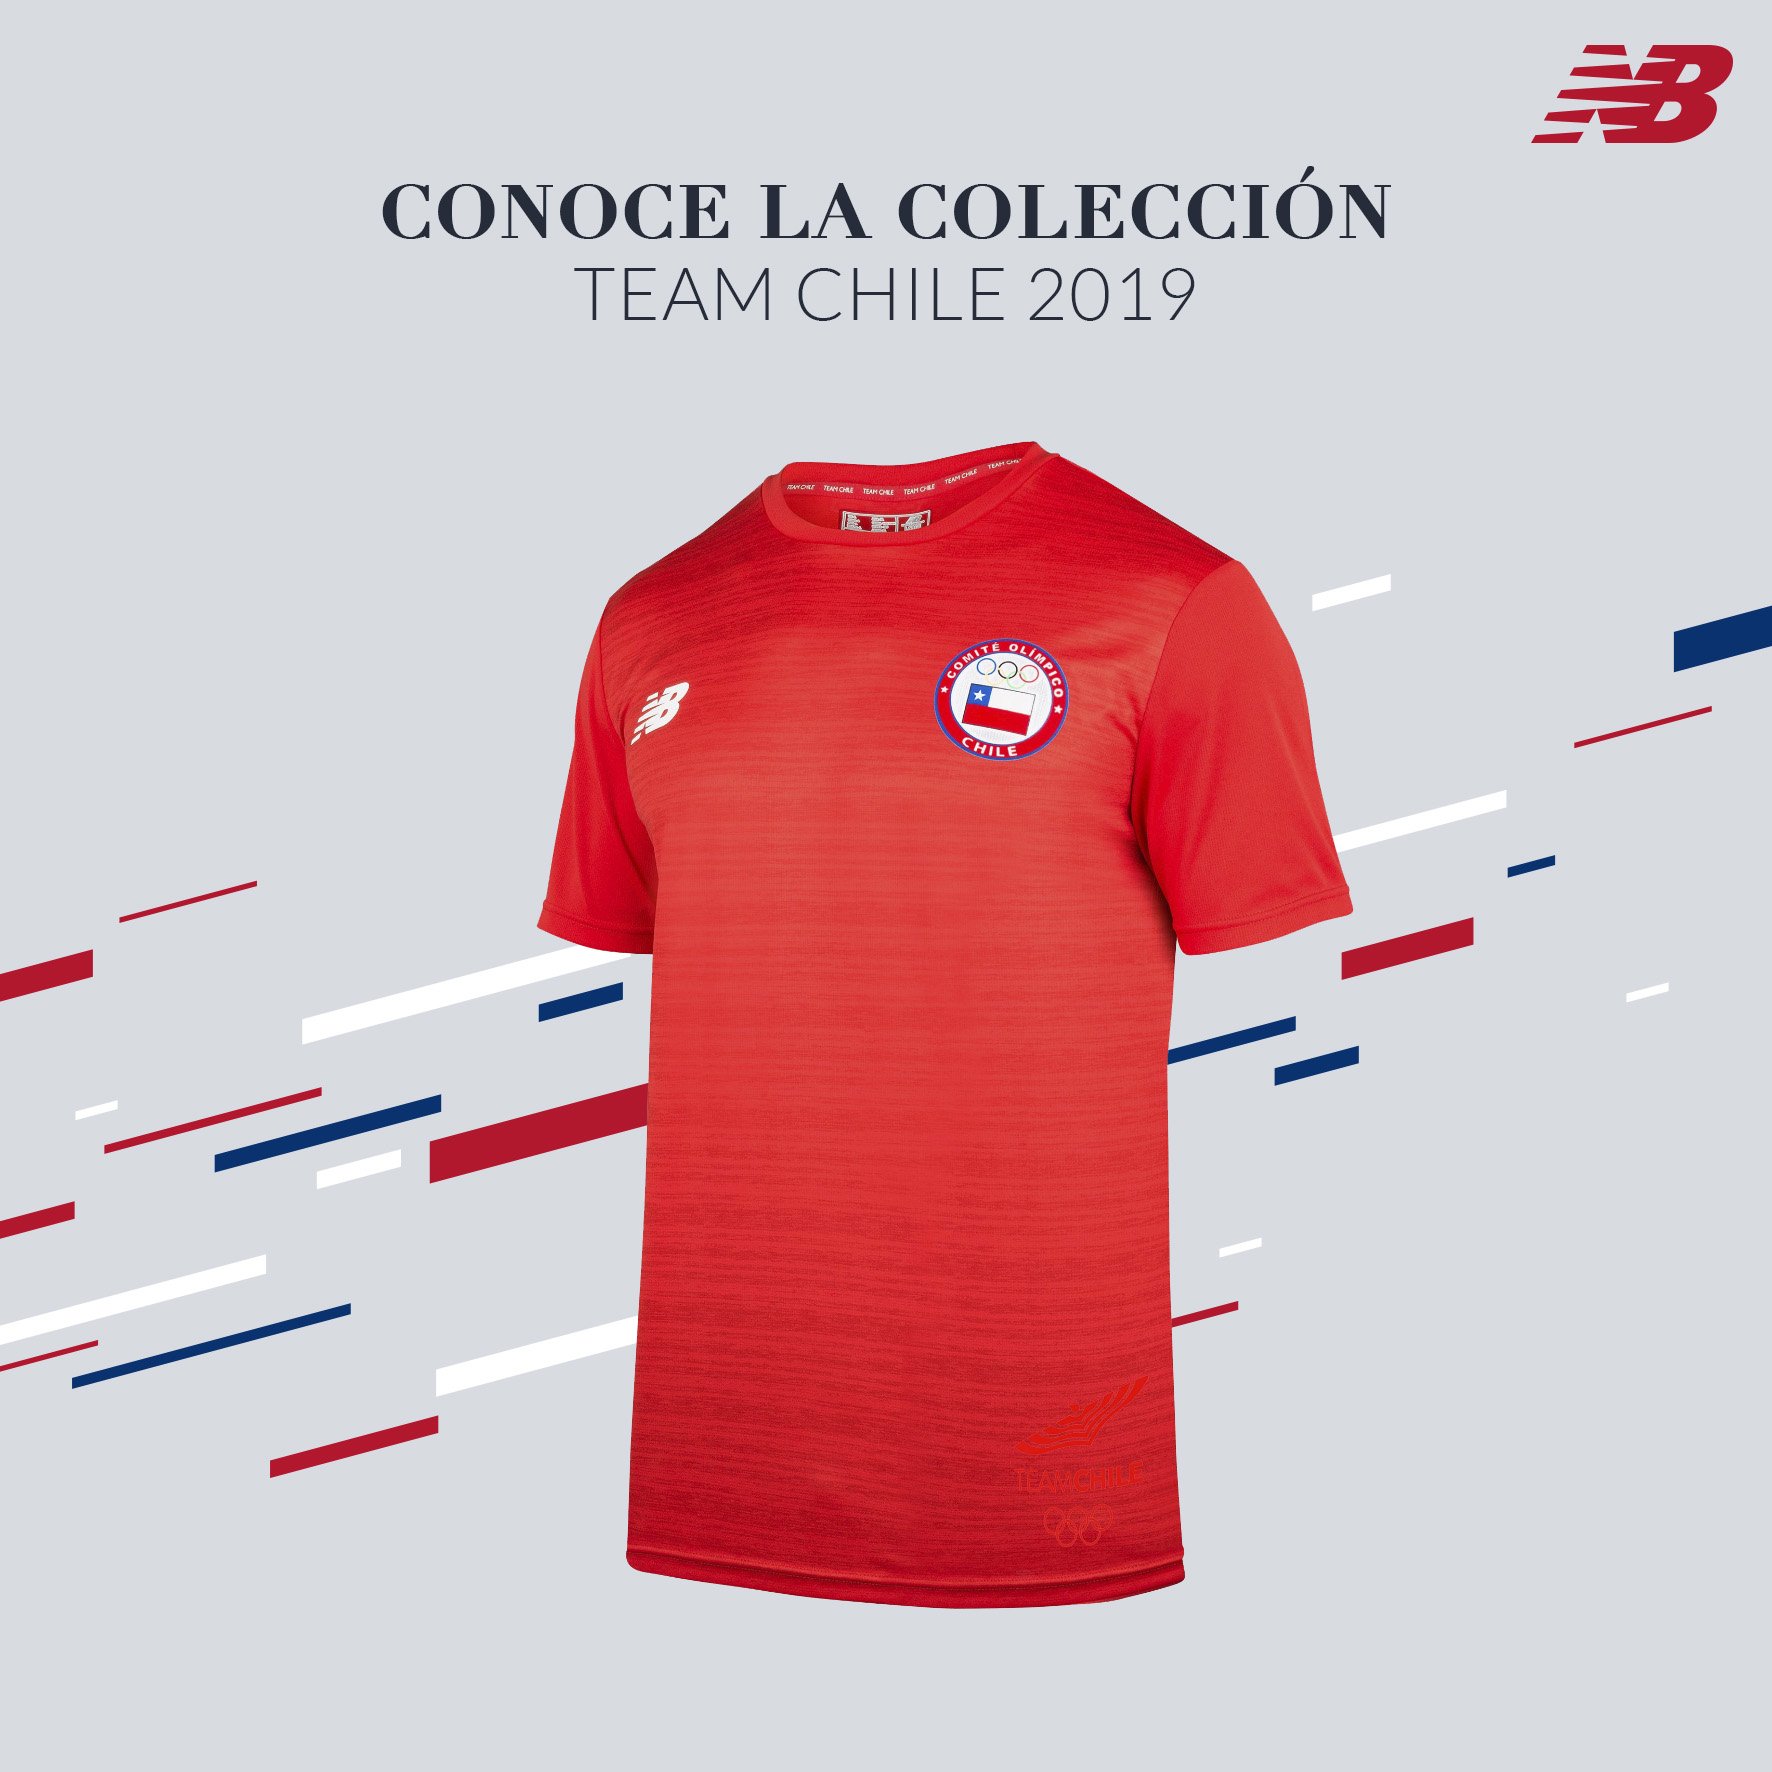 Paja Pastor deficiencia New Balance Chile on Twitter: "Desde ya puedes encontrar la colección que  utilizará el Team Chile en los Juegos Panamericanos Lima 2019. Búscala en  nuestras tiendas y en https://t.co/i0yutYbRB5 https://t.co/ttAaRYdCsp" /  Twitter